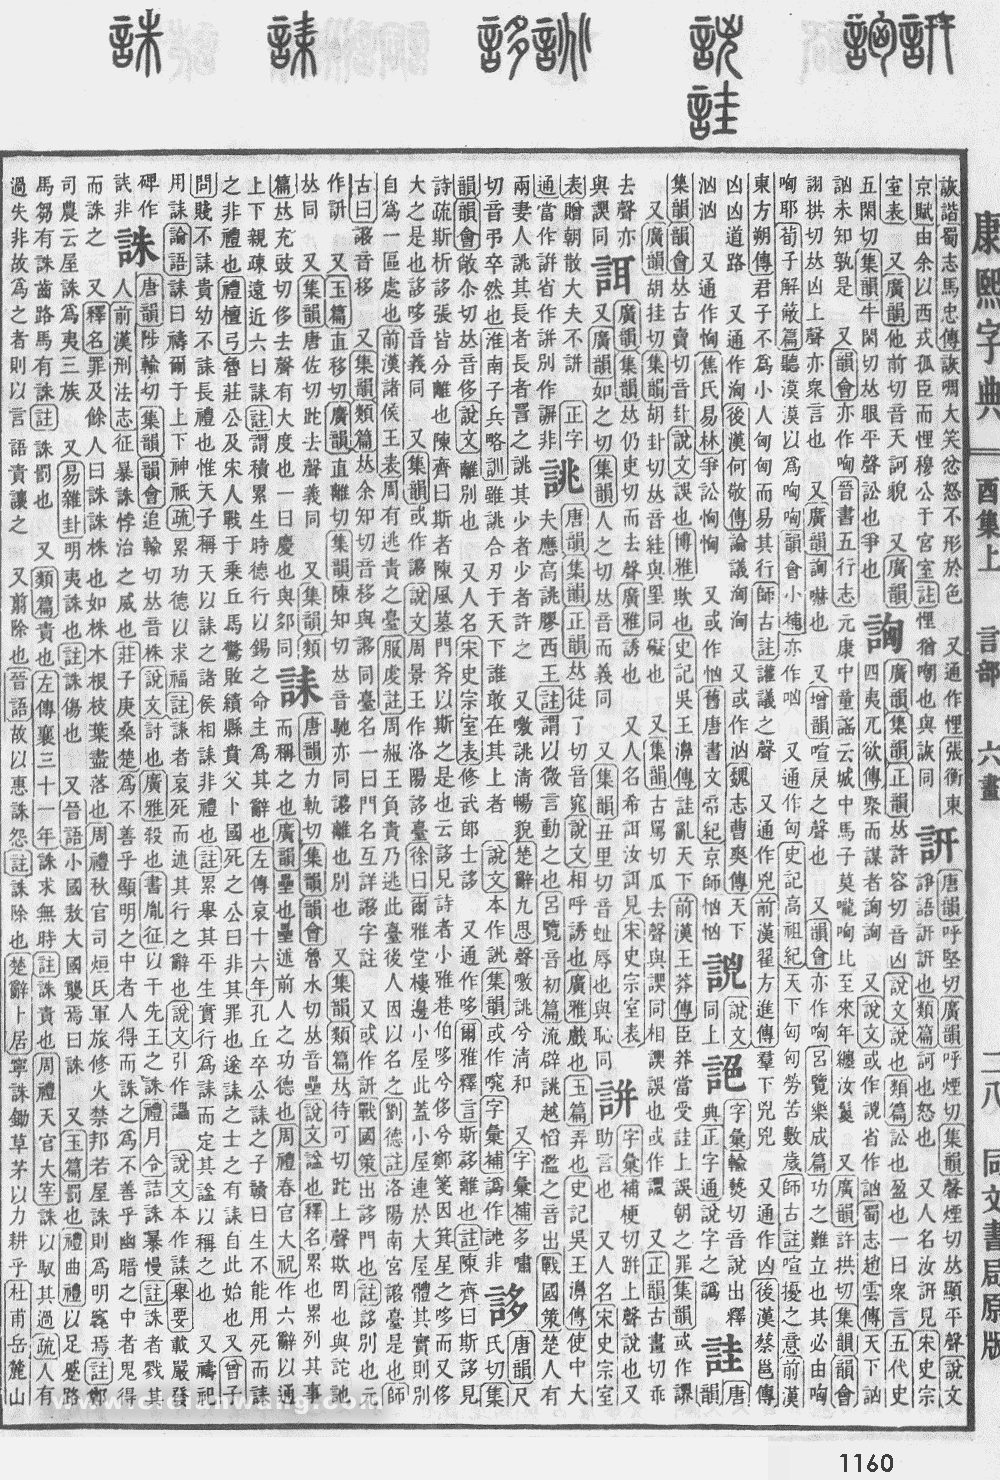 康熙字典掃描版第1160頁